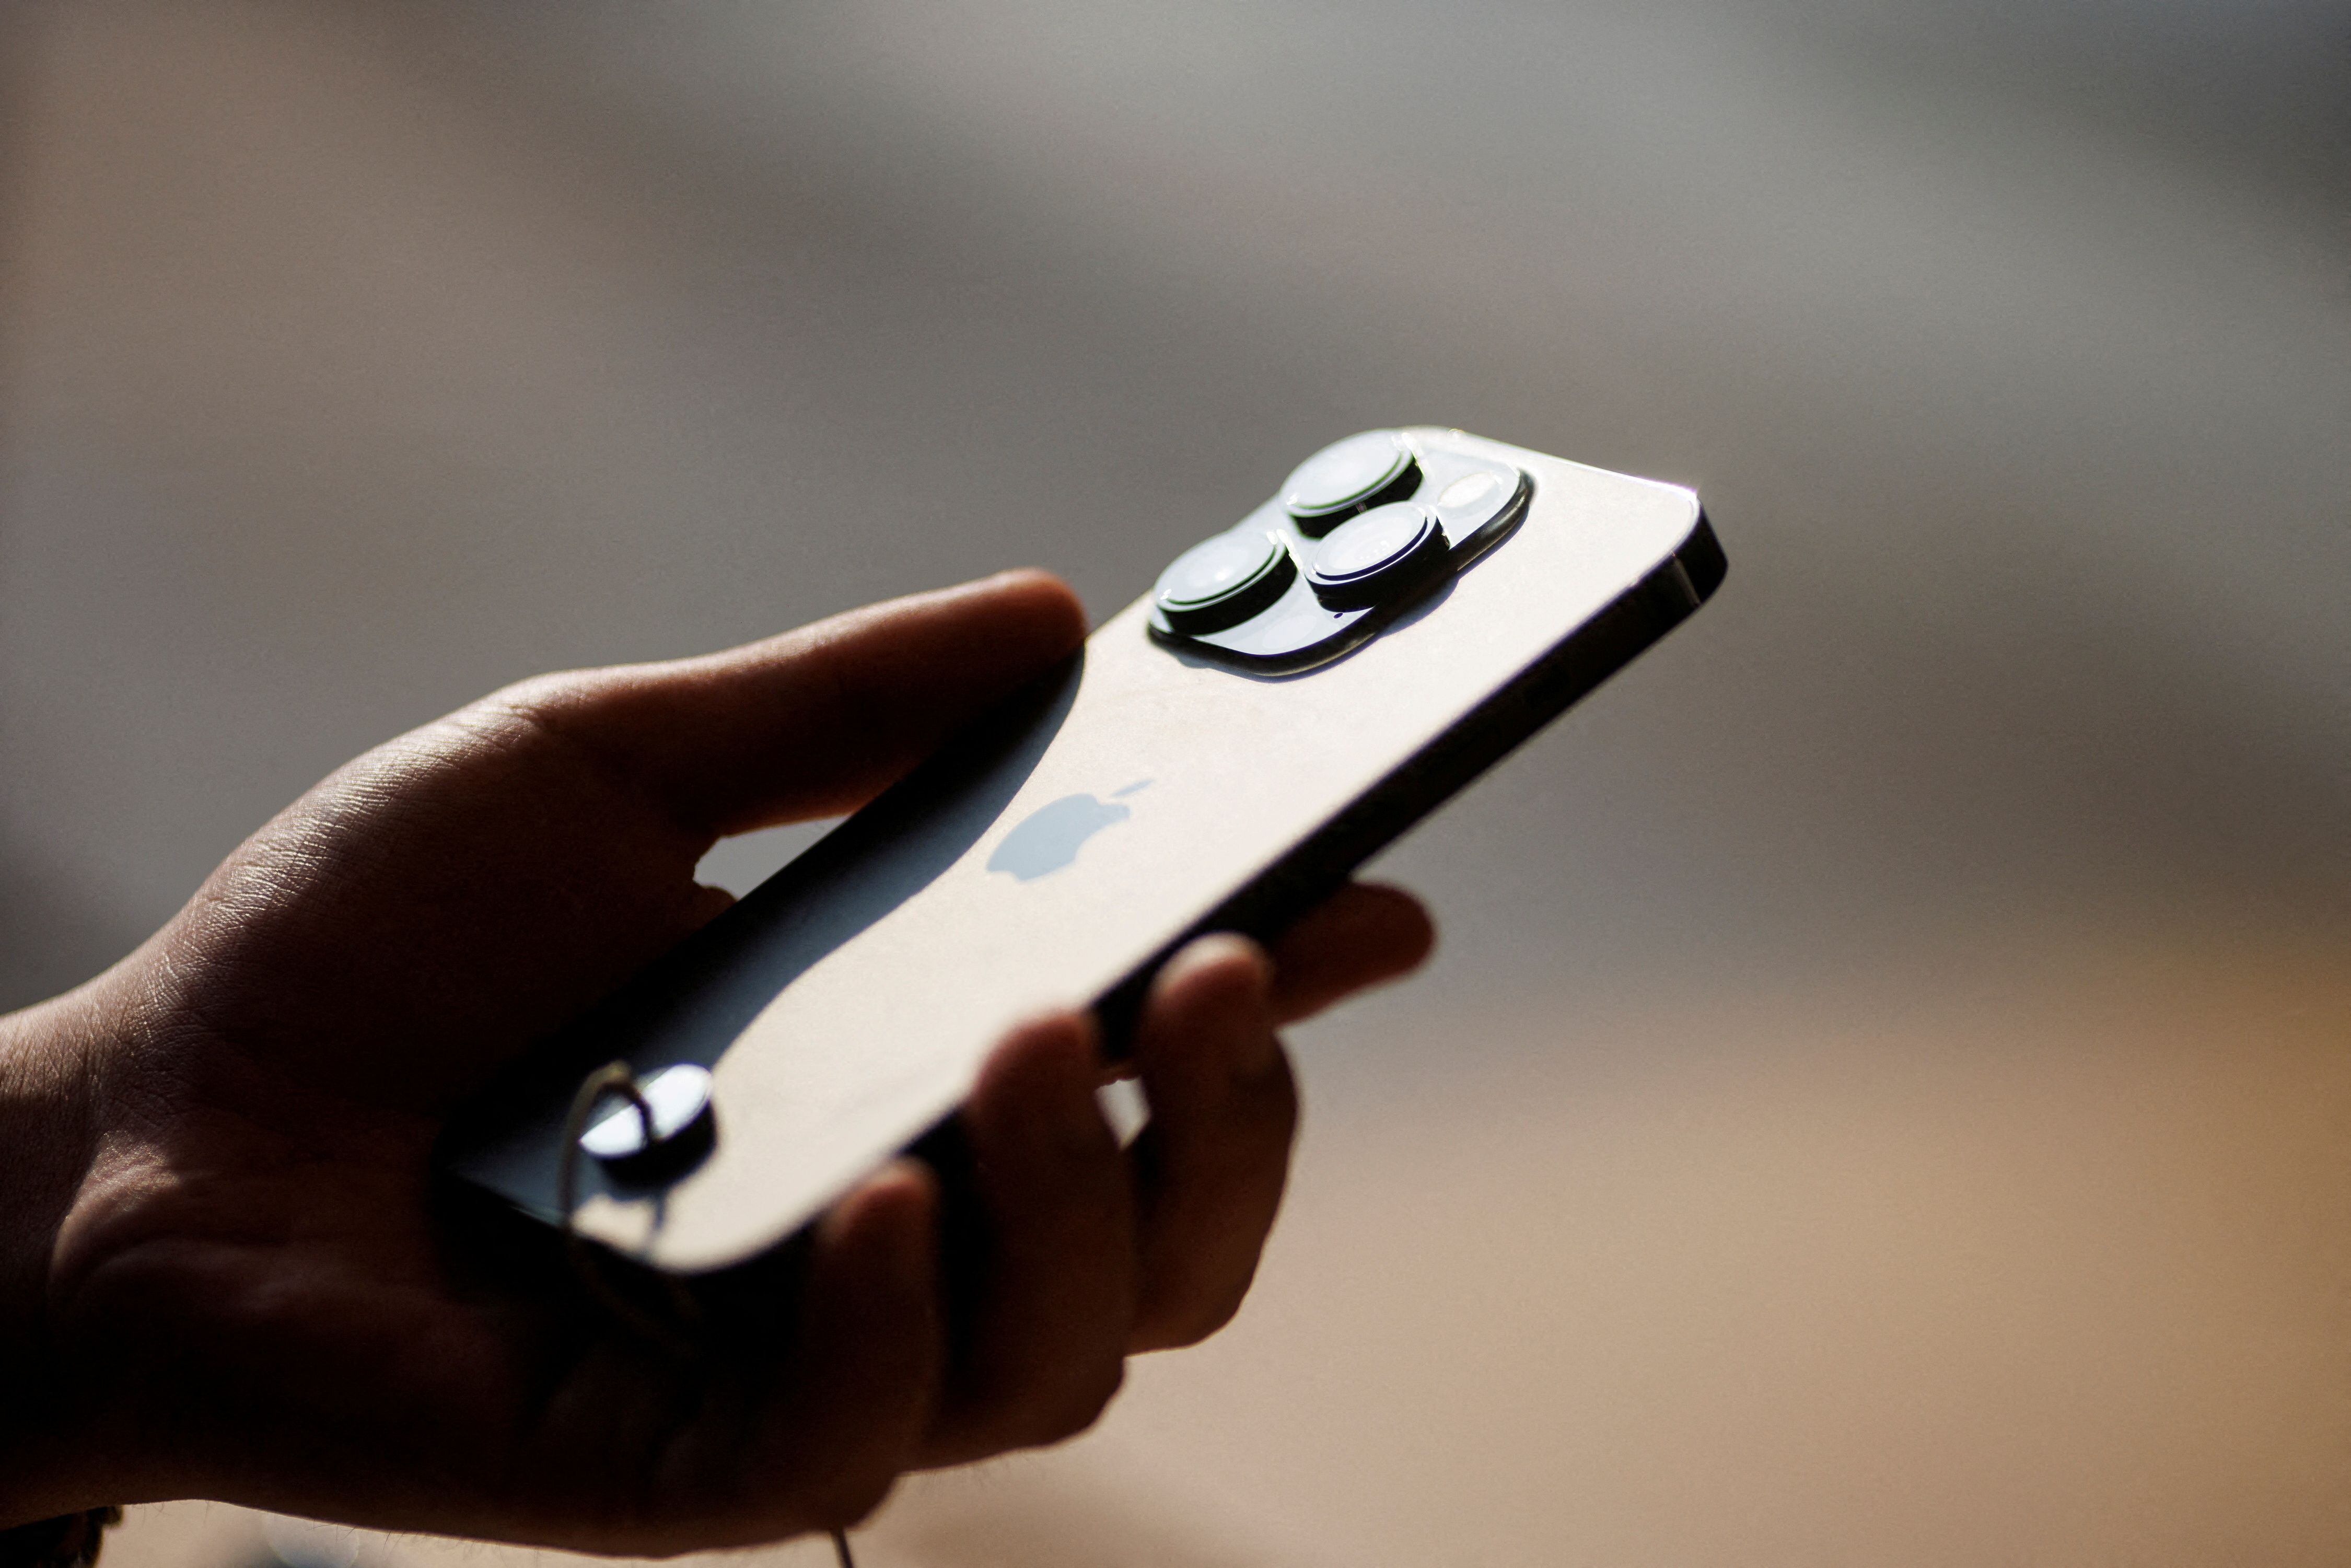 El fallo del Tribunal Superior permitirá que Apple inicie la venta de los nuevos dispositivos iPhone 14, 14 Plus, 14 Pro y 14 Pro Max en Colombia. REUTERS/Thomas Peter/File Photo